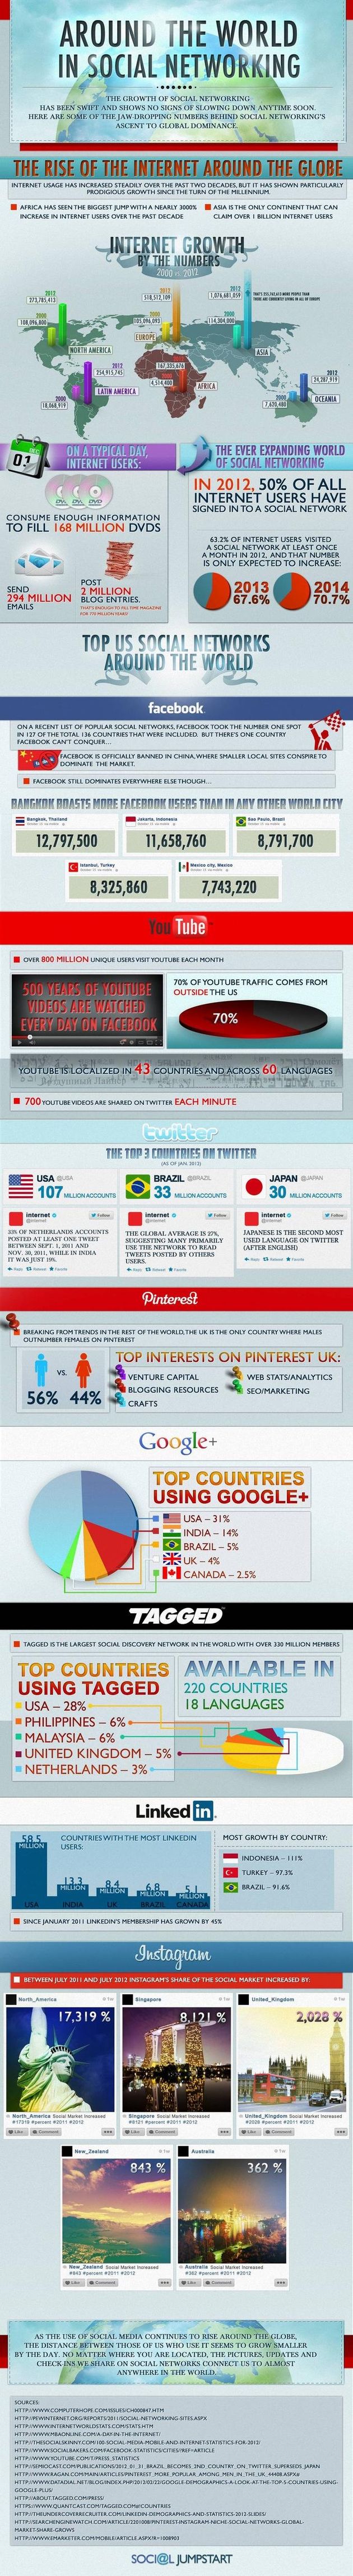 Una infografía que refleja el imparable crecimiento de internet y las redes sociales